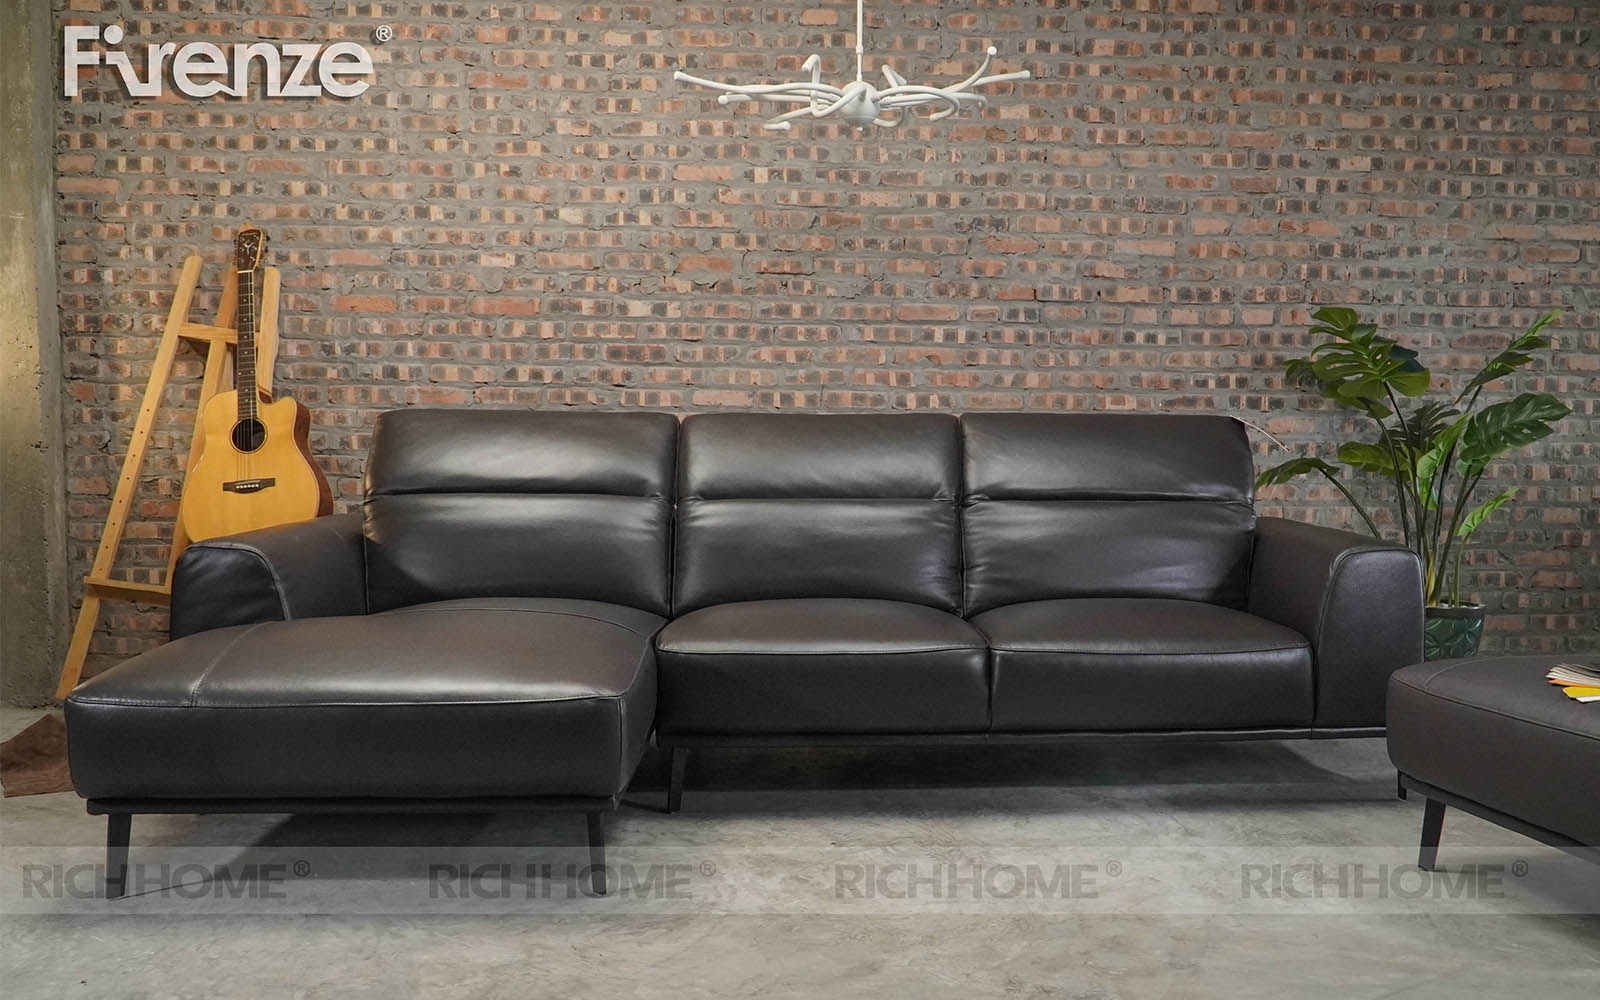 Tuyển tập các mẫu sofa màu đen thiết kế tinh tế và sang trọng nhất - Ảnh 10